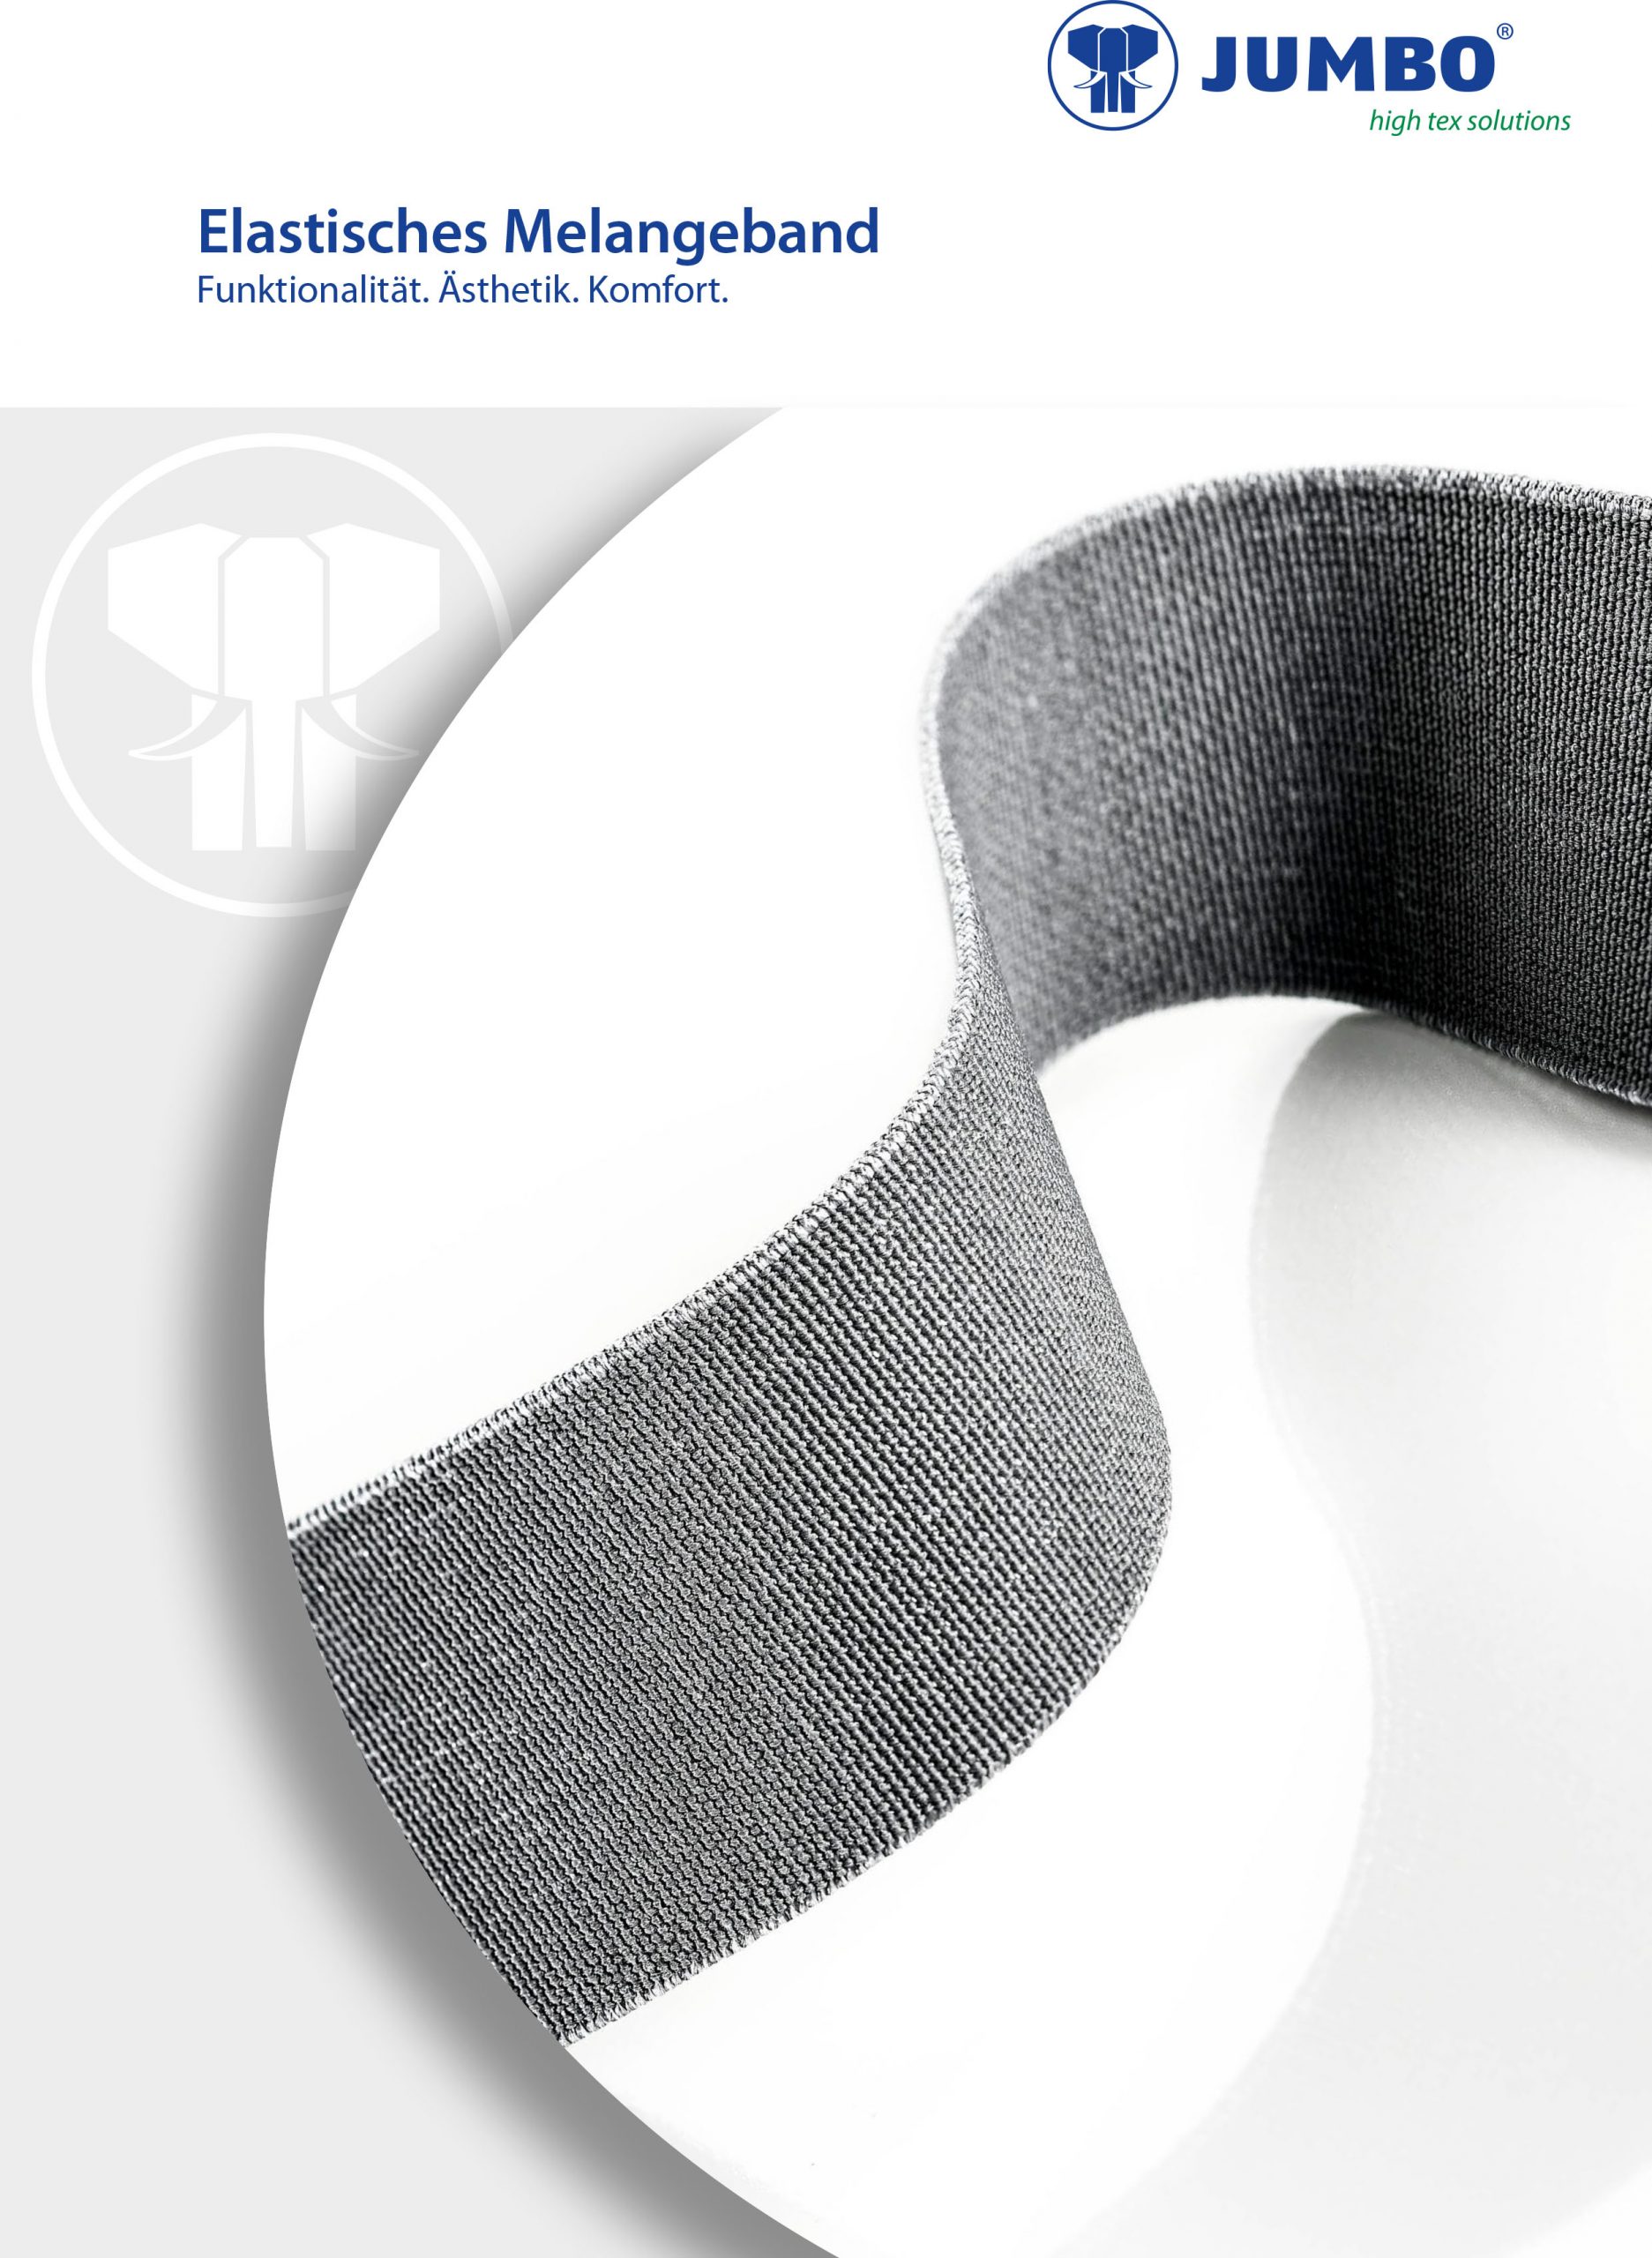 Produktfoto von einem elastischen Melangeband mit dem Text "Funktionalität. Ästehtik. Komfort"